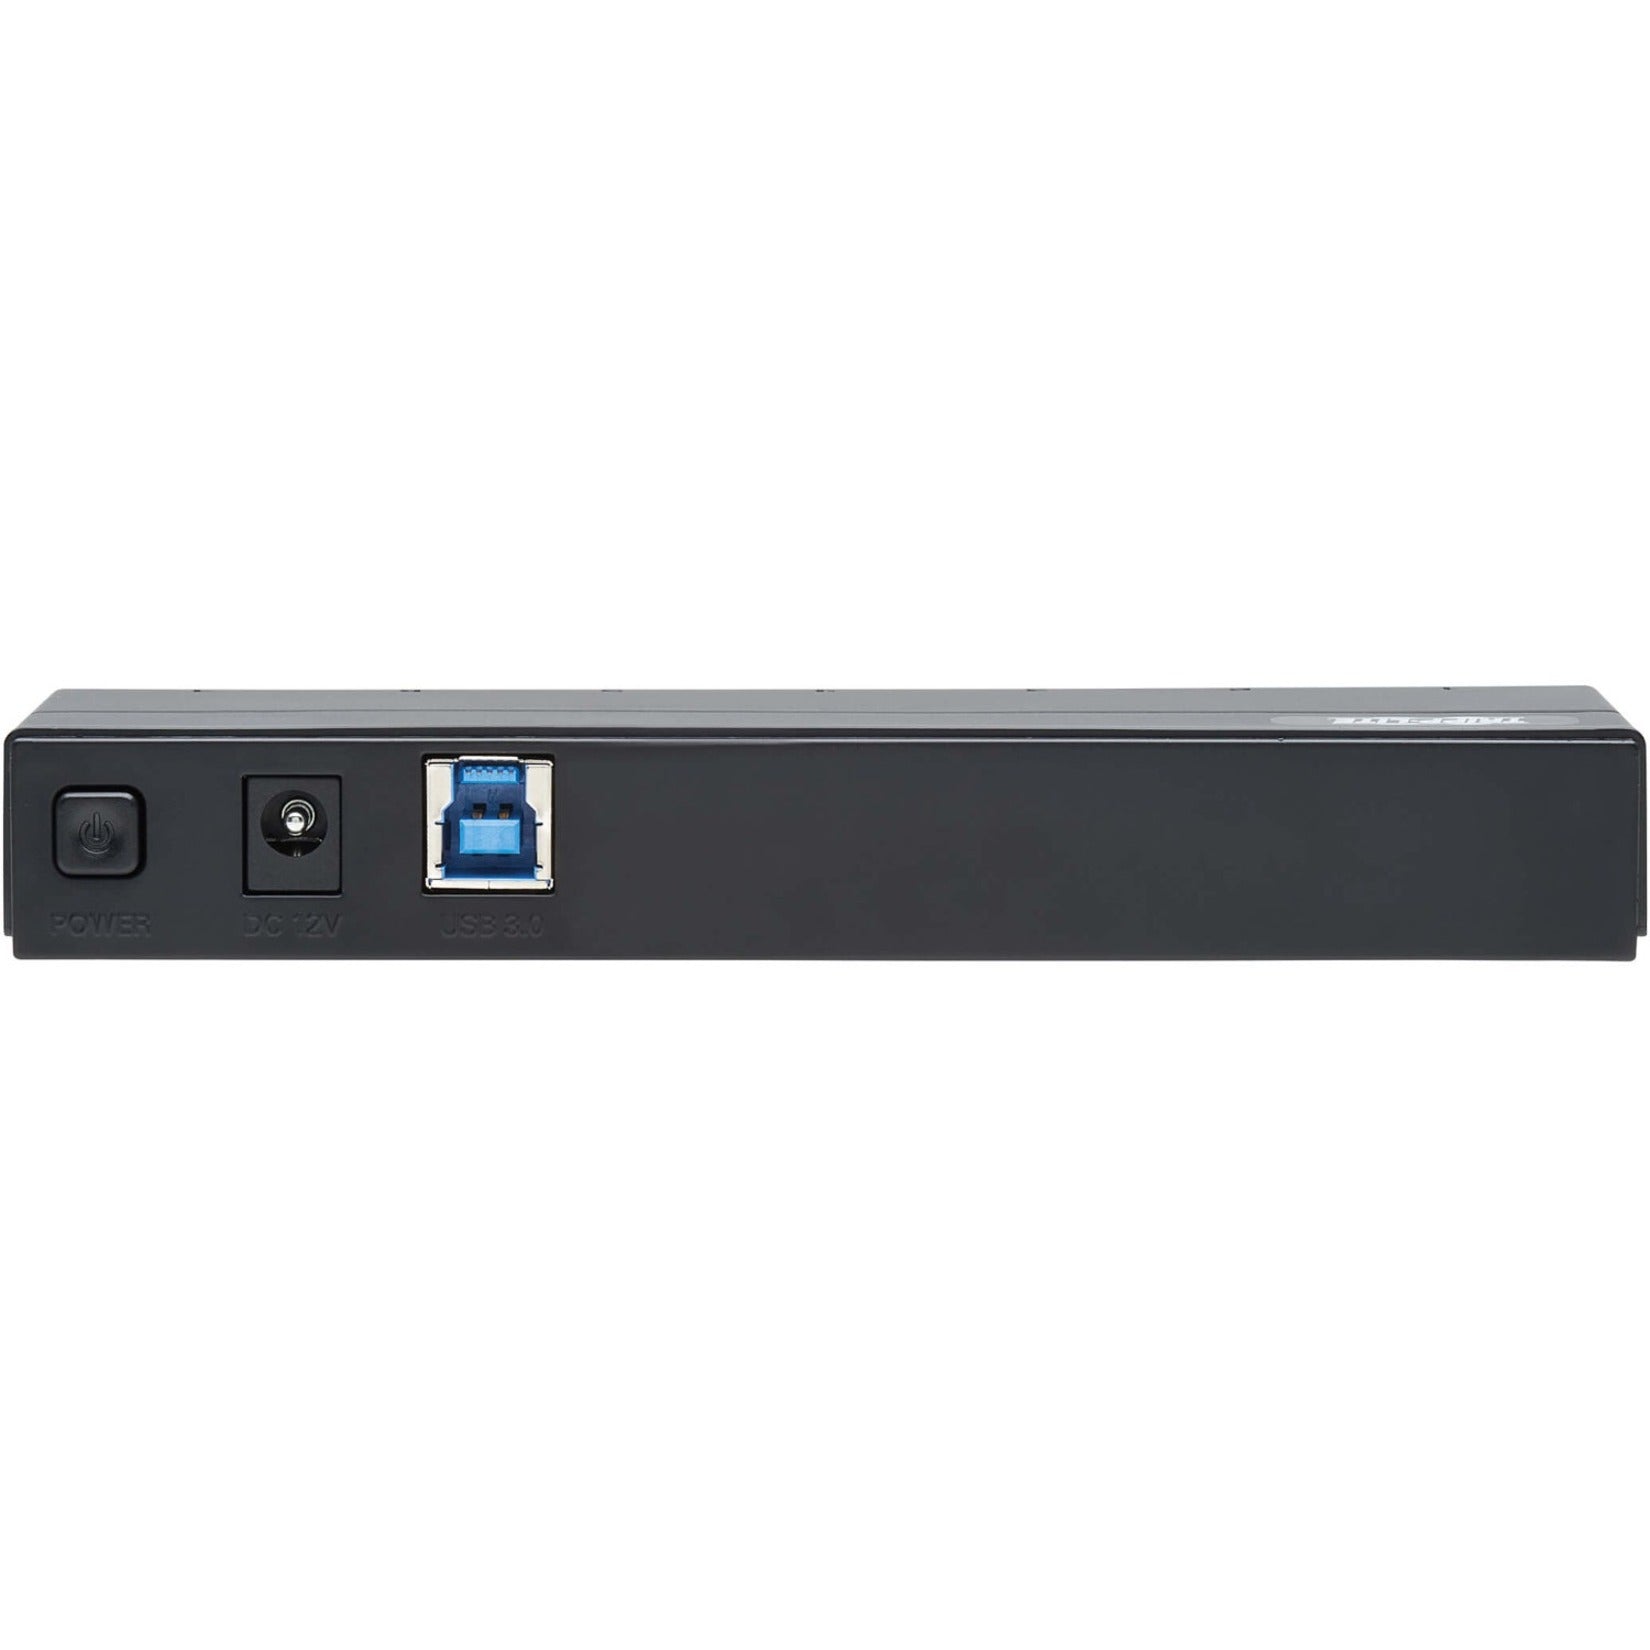 Tripp Lite U360-007-INT 7-Port USB-A Mini Hub - USB 3.2 Gen 1、International Plug Adapters、Portable Black  フルットライト U360-007-INT 7ポートUSB-Aミニハブ - USB 3.2 Gen 1、国際プラグアダプタ、ポータブルブラック